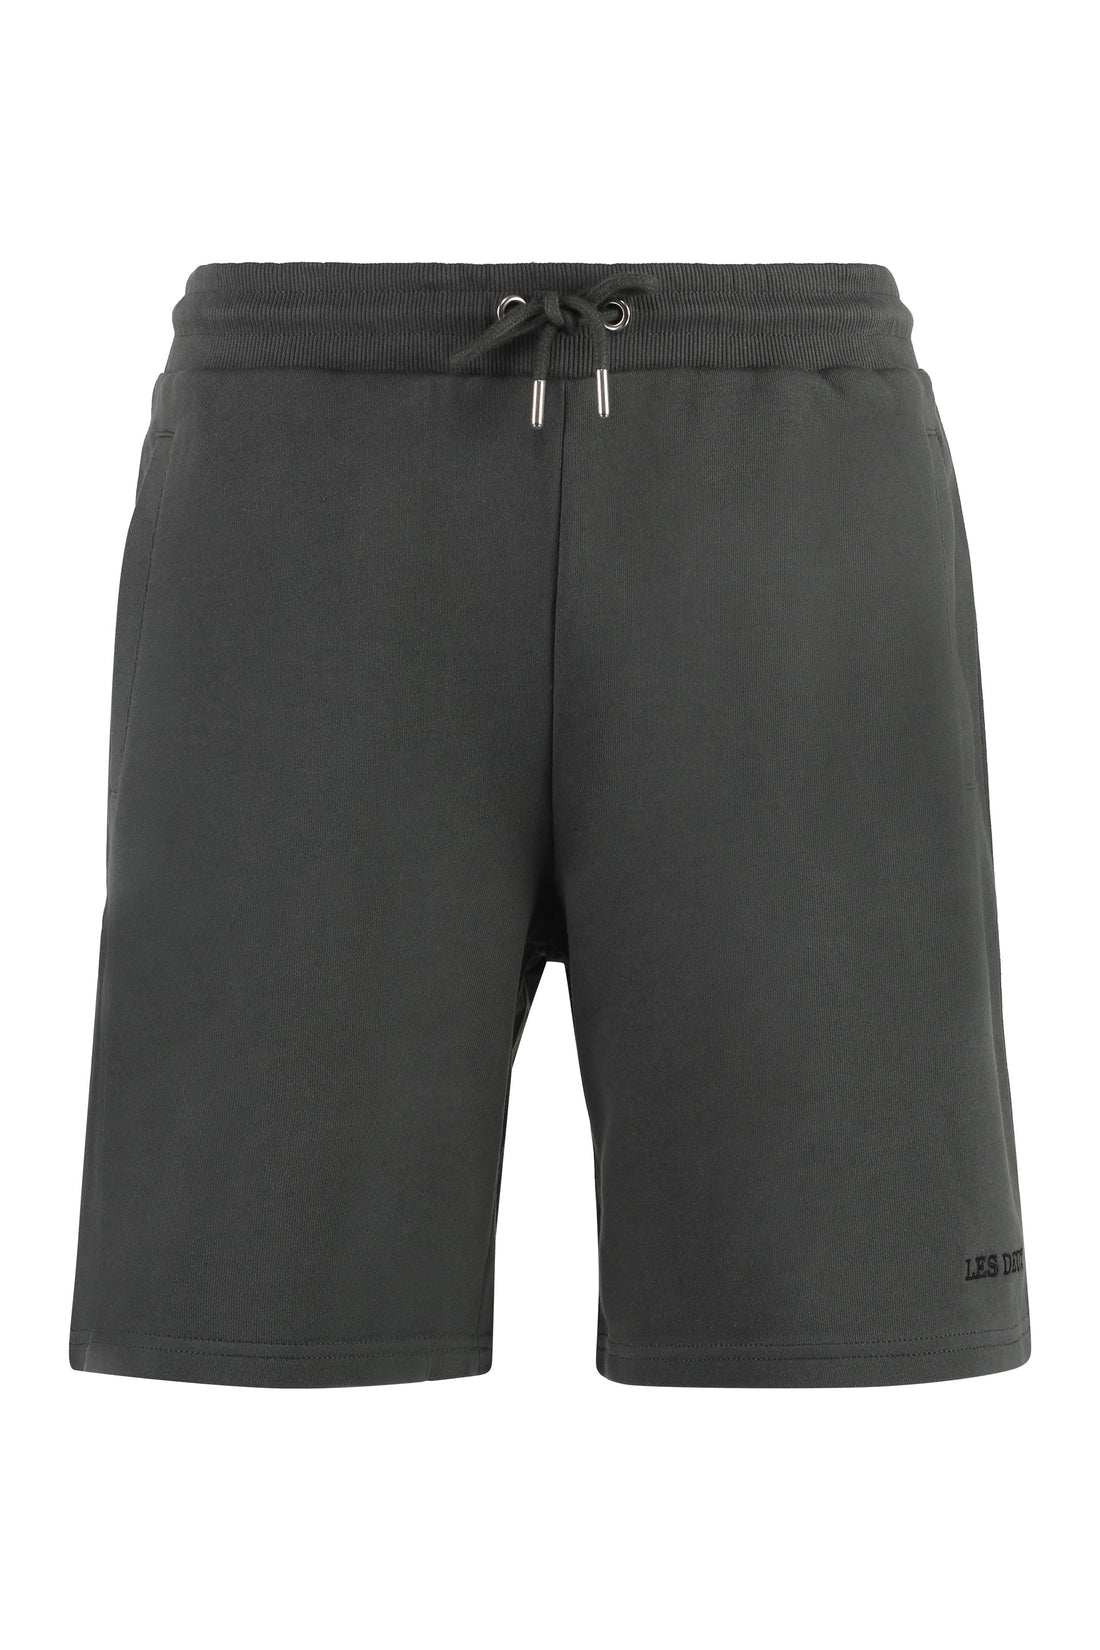 Les Deux-OUTLET-SALE-Dallas fleece shorts-ARCHIVIST